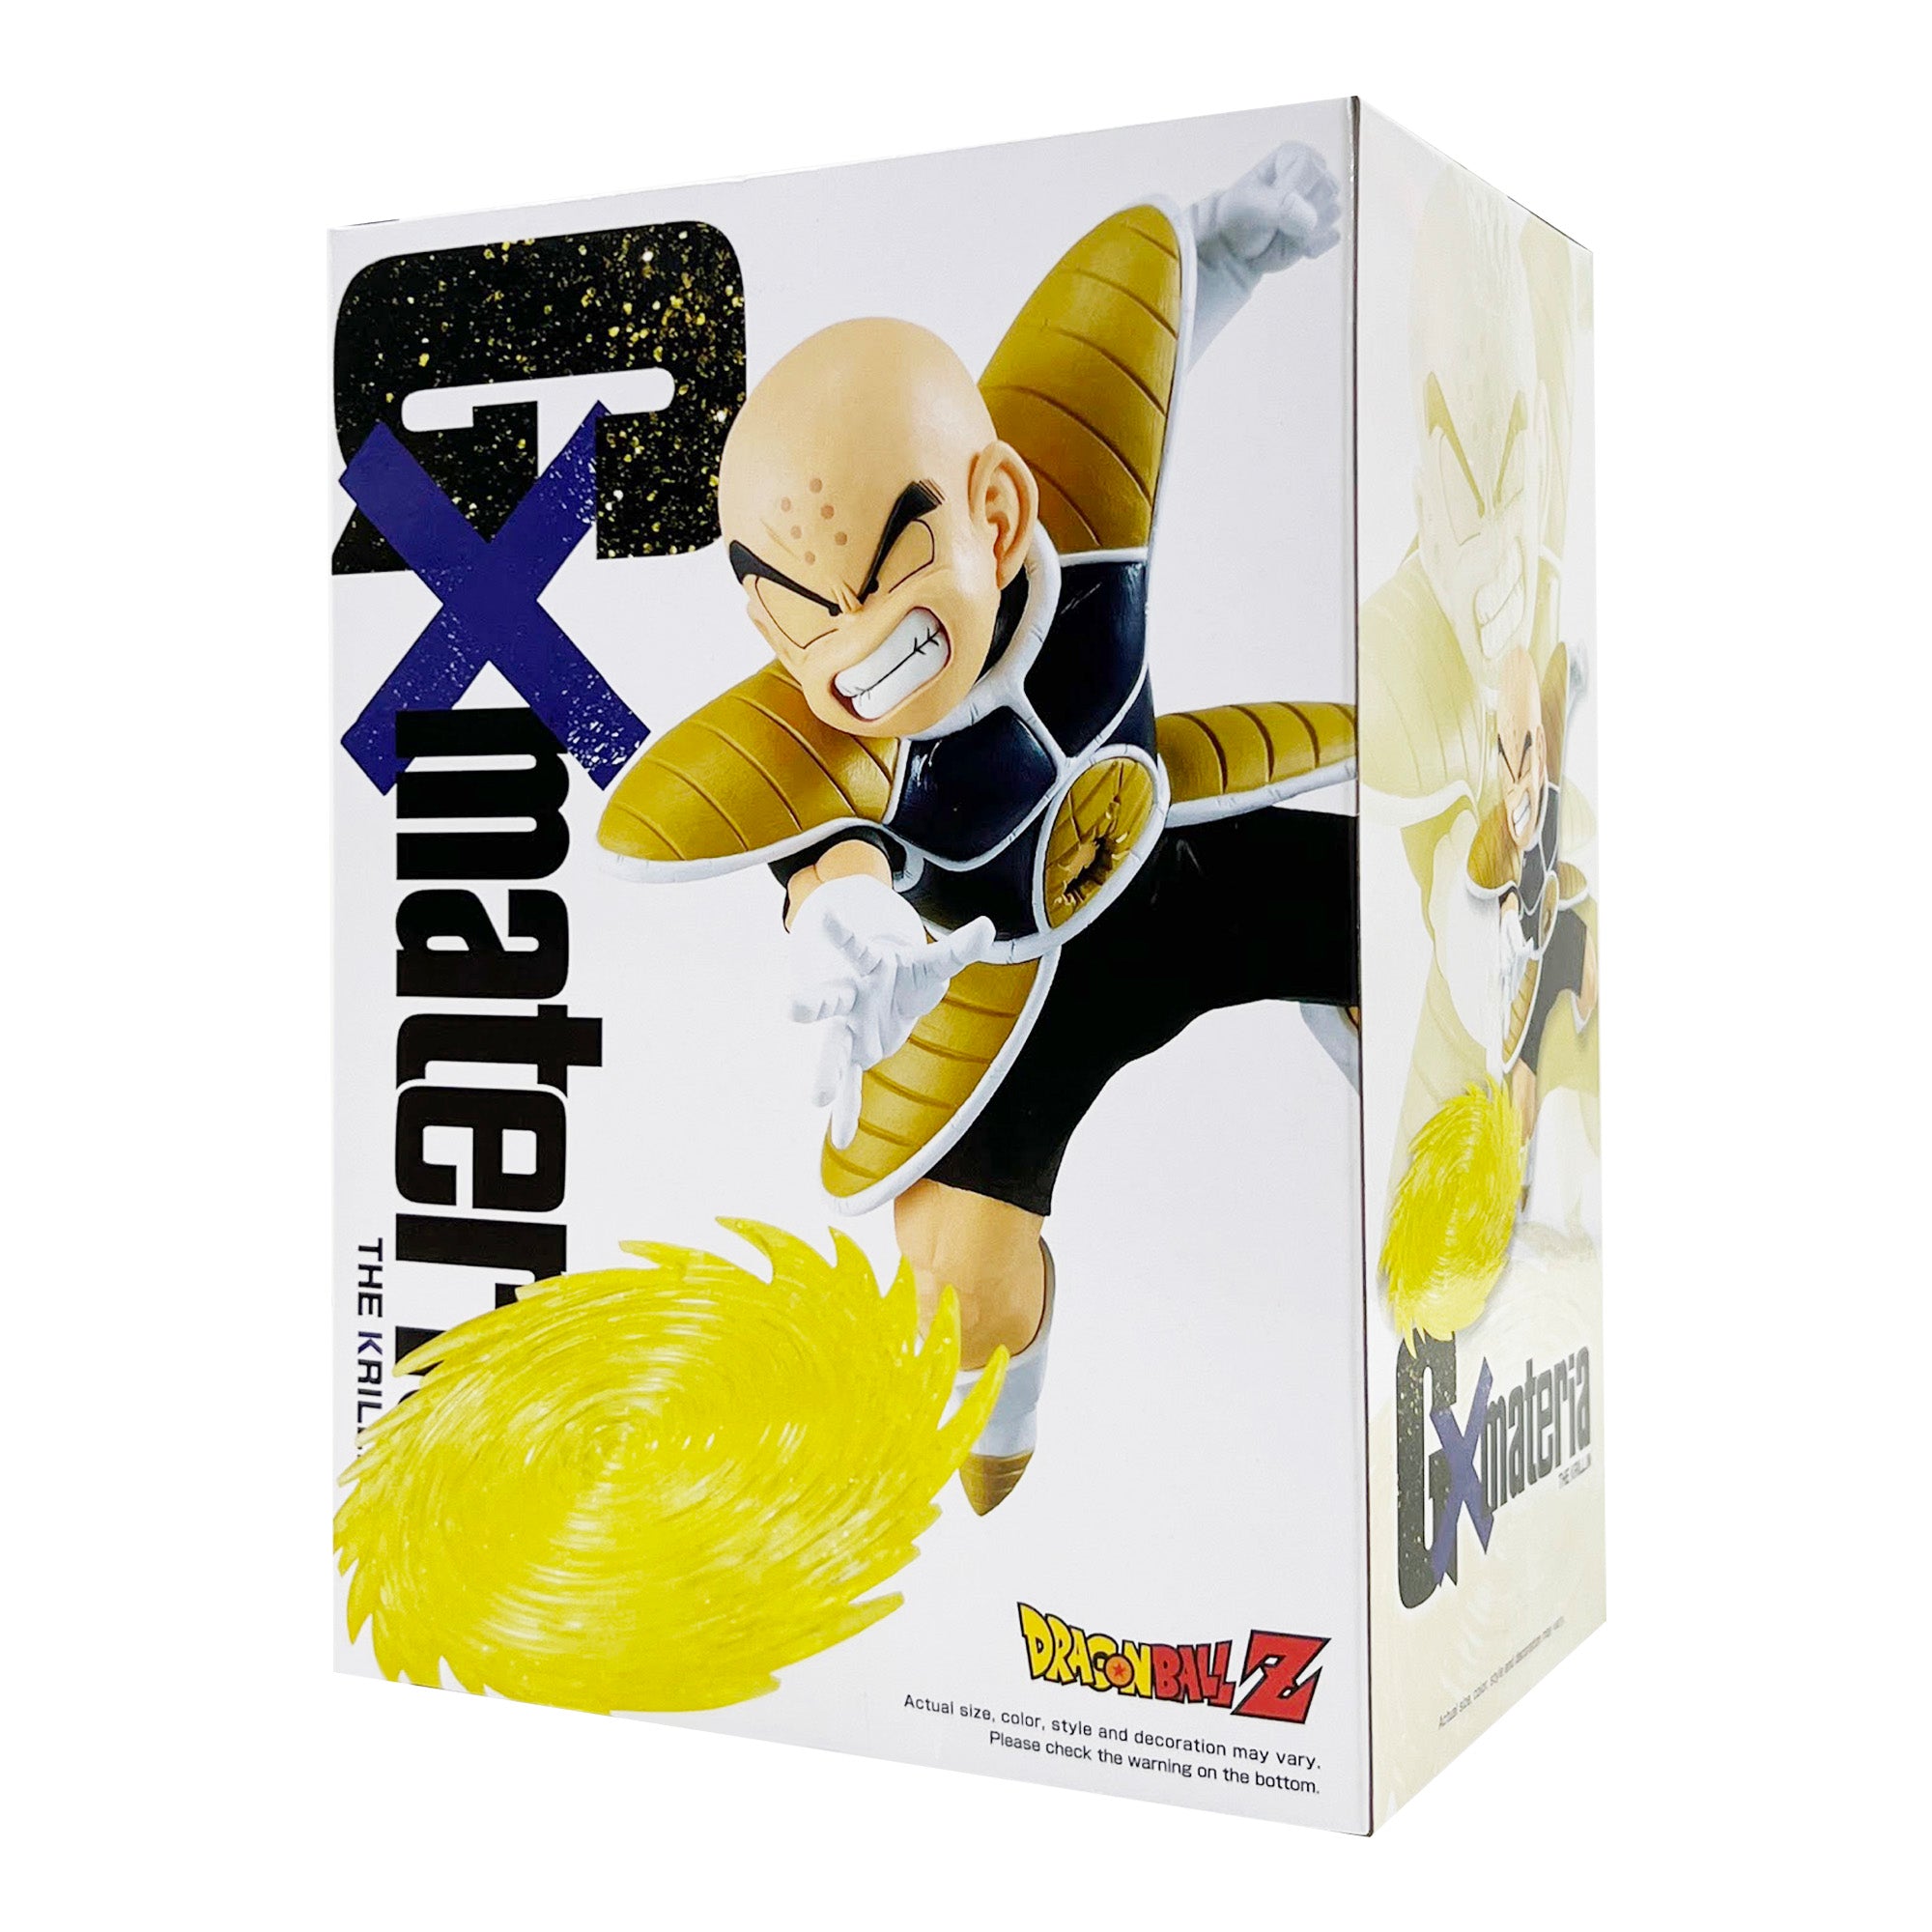 Banpresto x Bandai: Dragon Ball Z - GX Materia The Krillin Figure